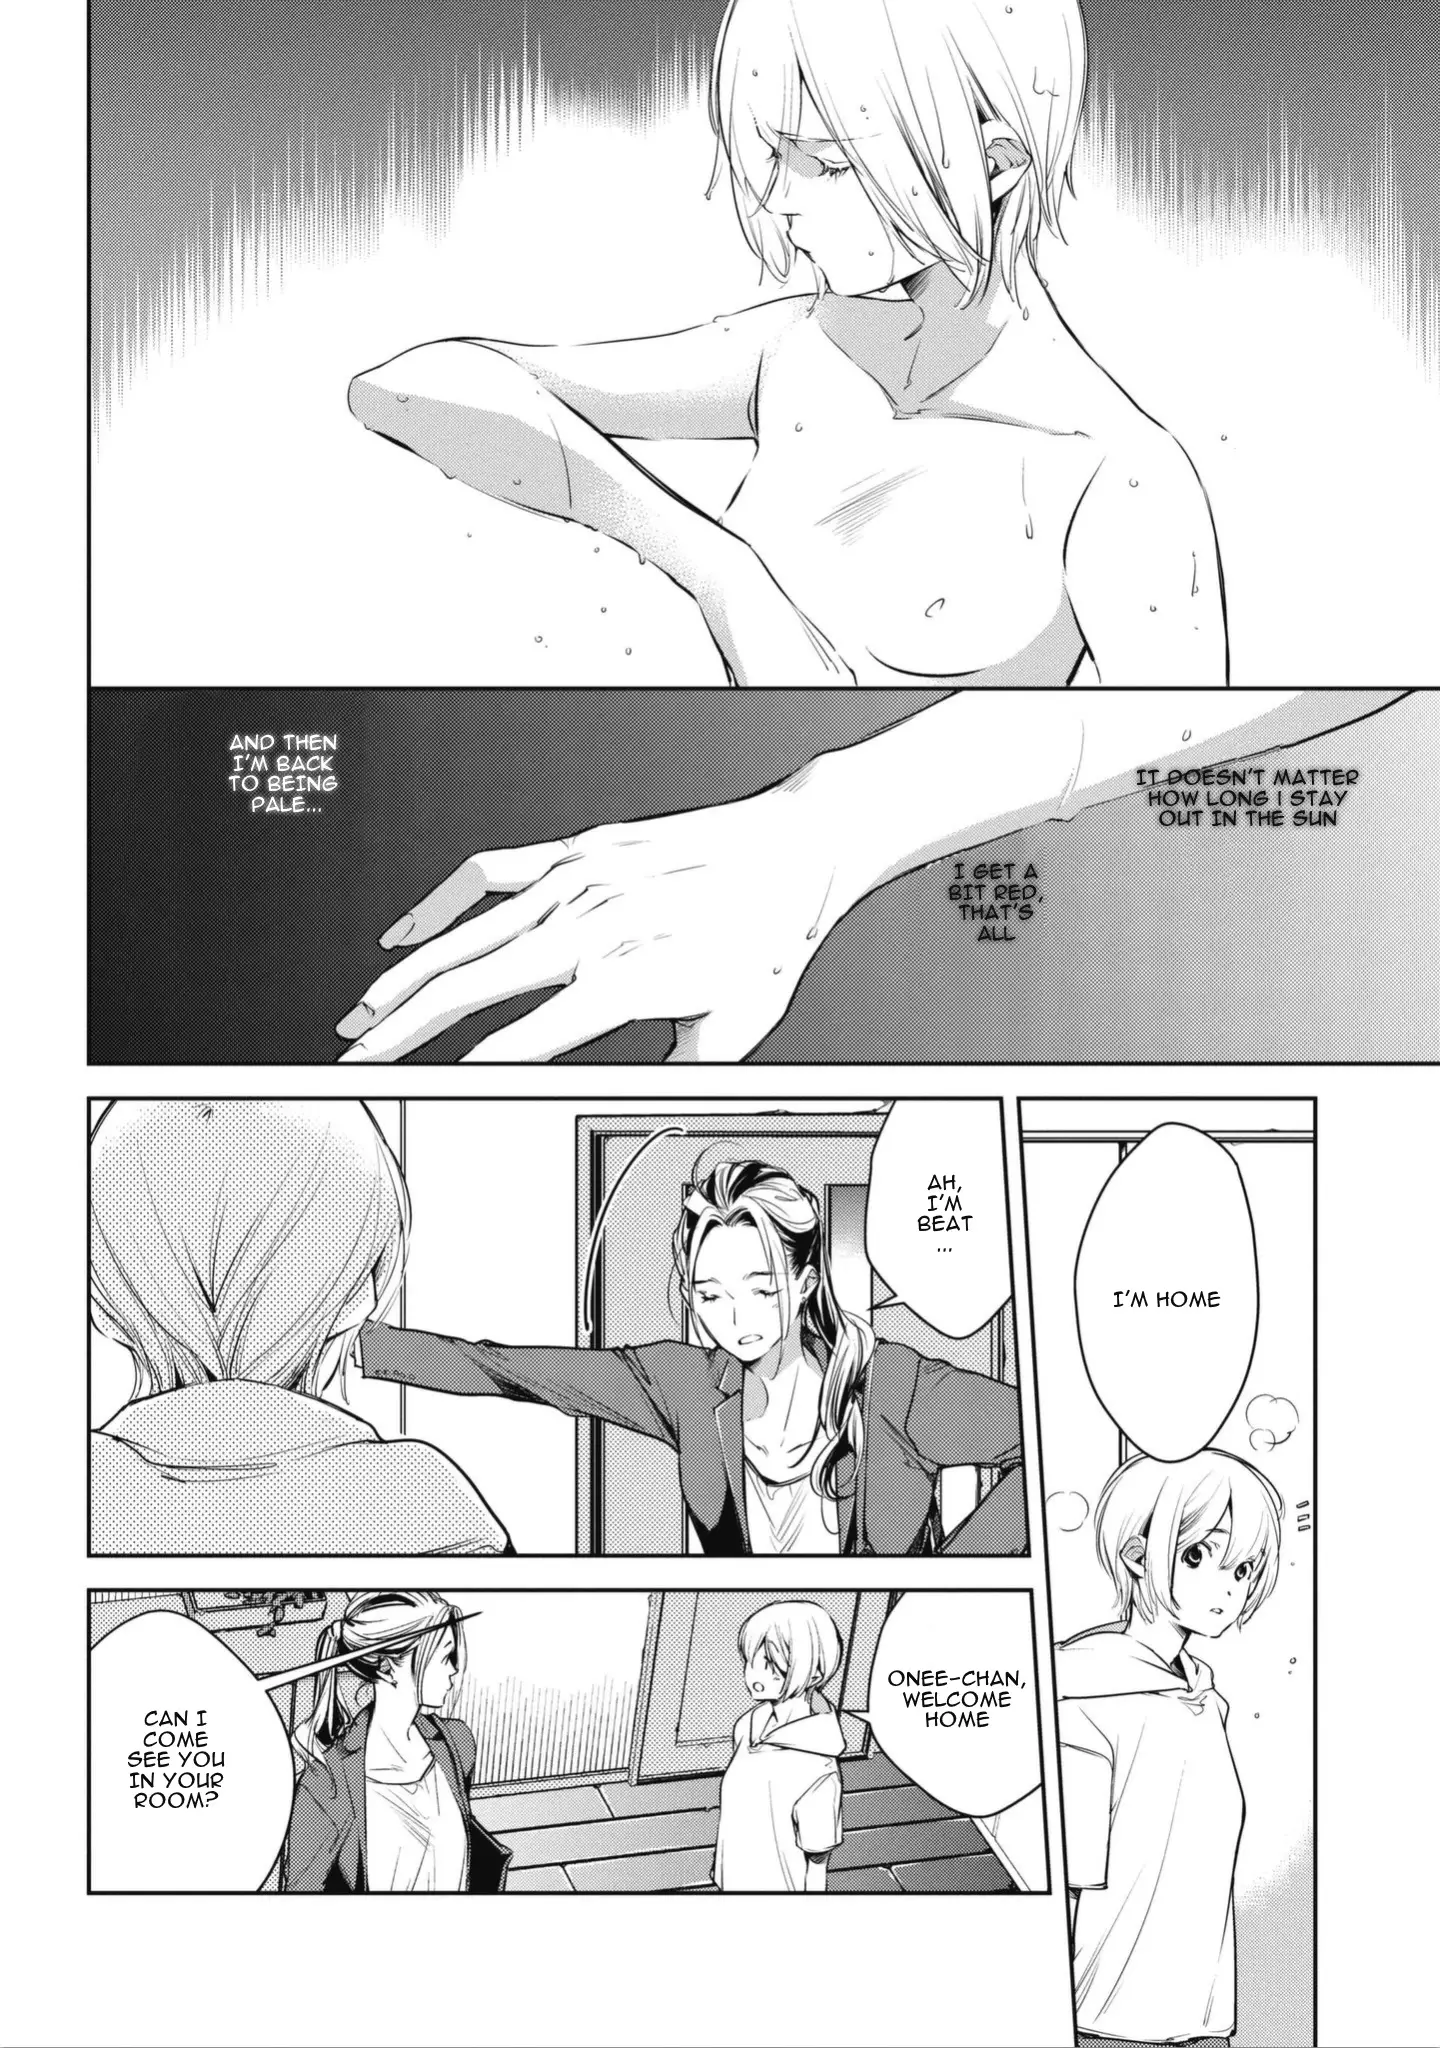 Okashiratsuki - 1 page 10